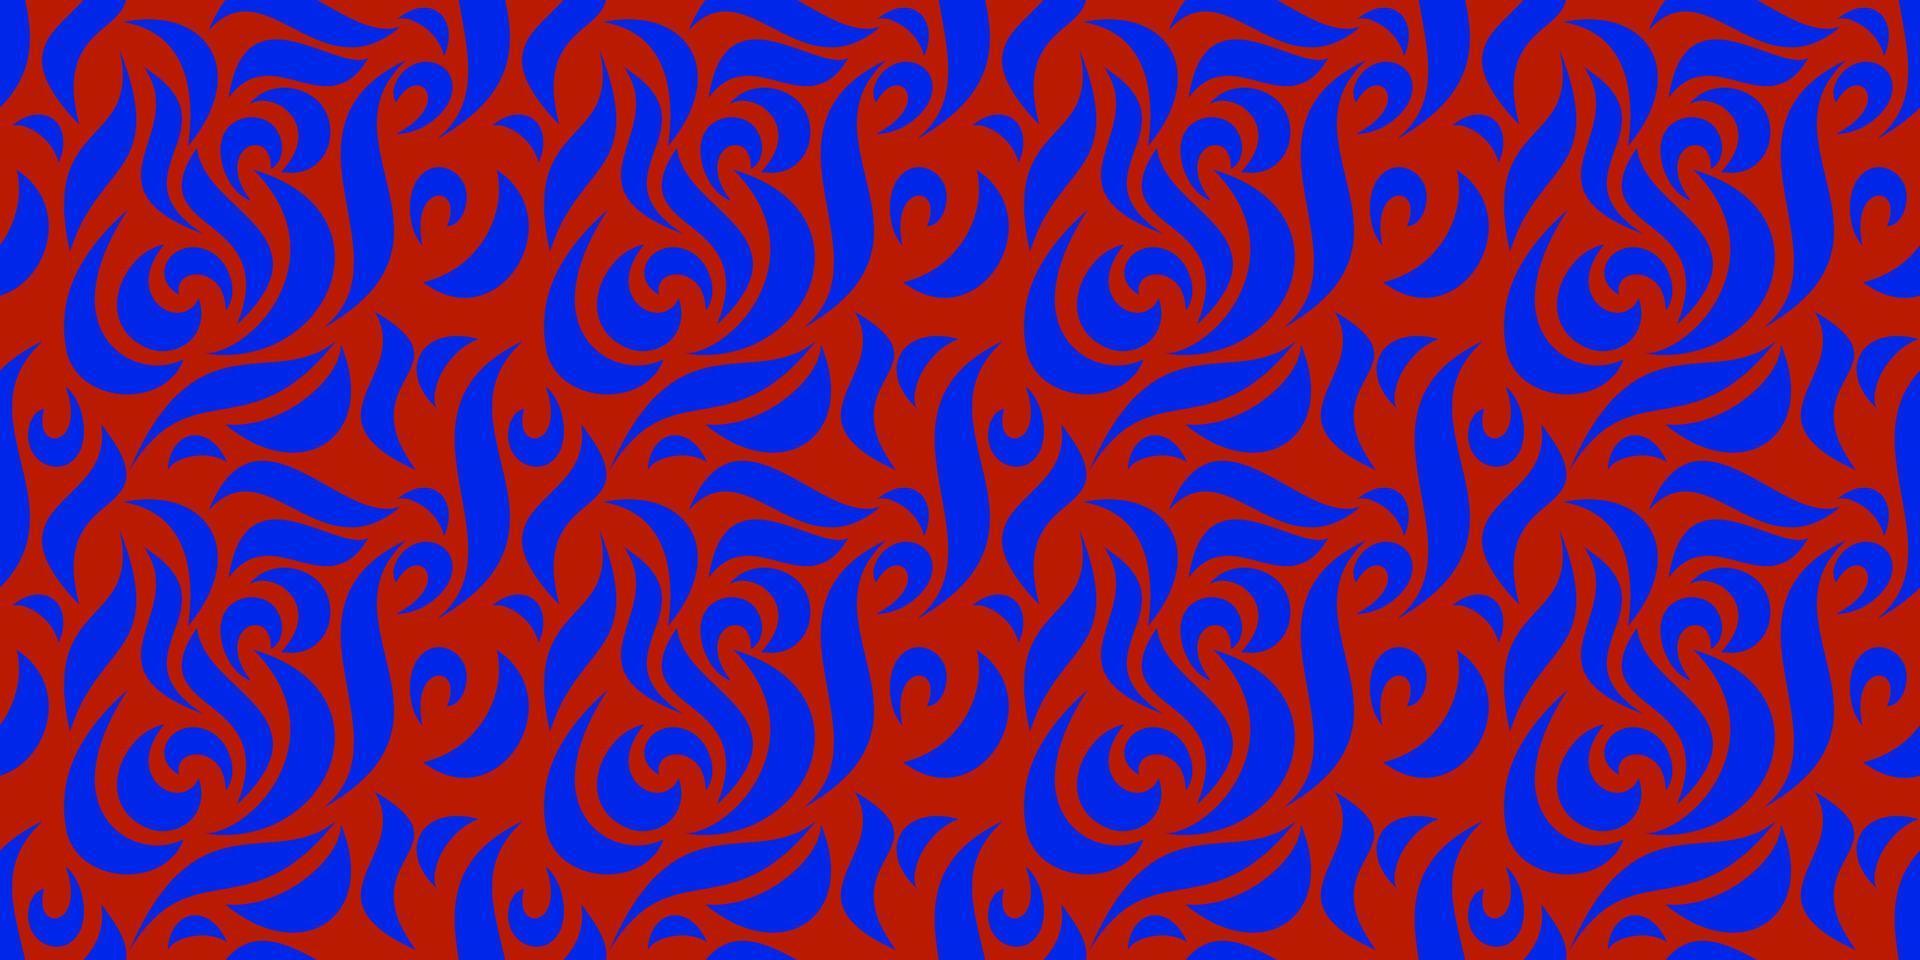 asymmetrisches Muster handgezeichnete Kunsthand. stilisierte Blumenverzierung - nahtloses Muster. glatte geschwungene Linien - ein Muster für die Innendekoration oder den Druck auf Stoff vektor